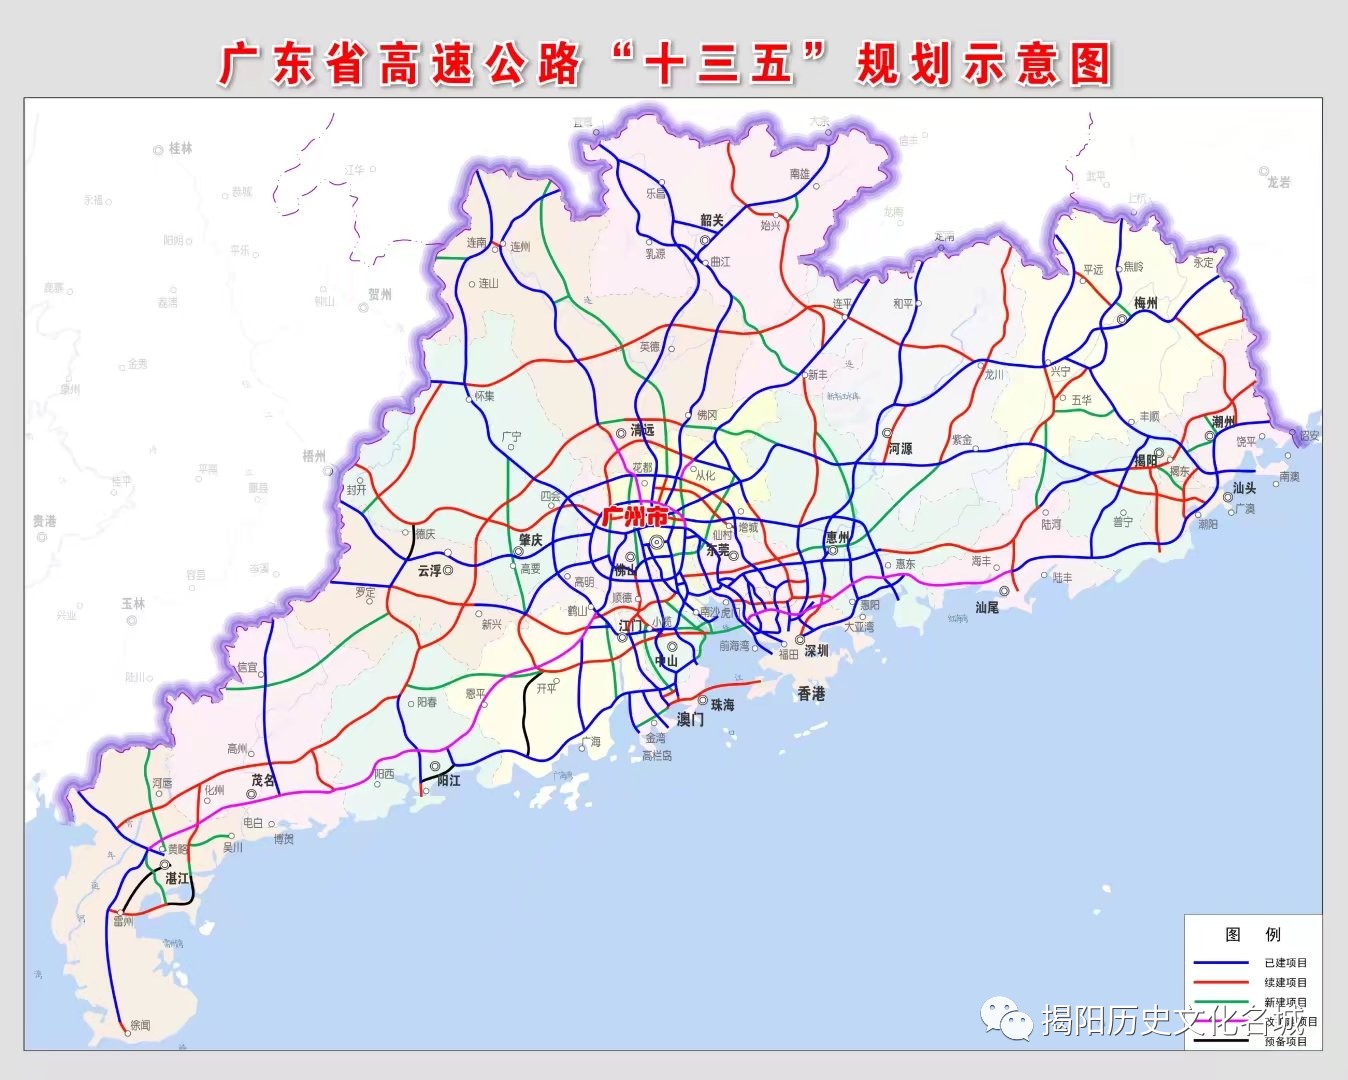 广东省高速公路"十三五"规划示意图